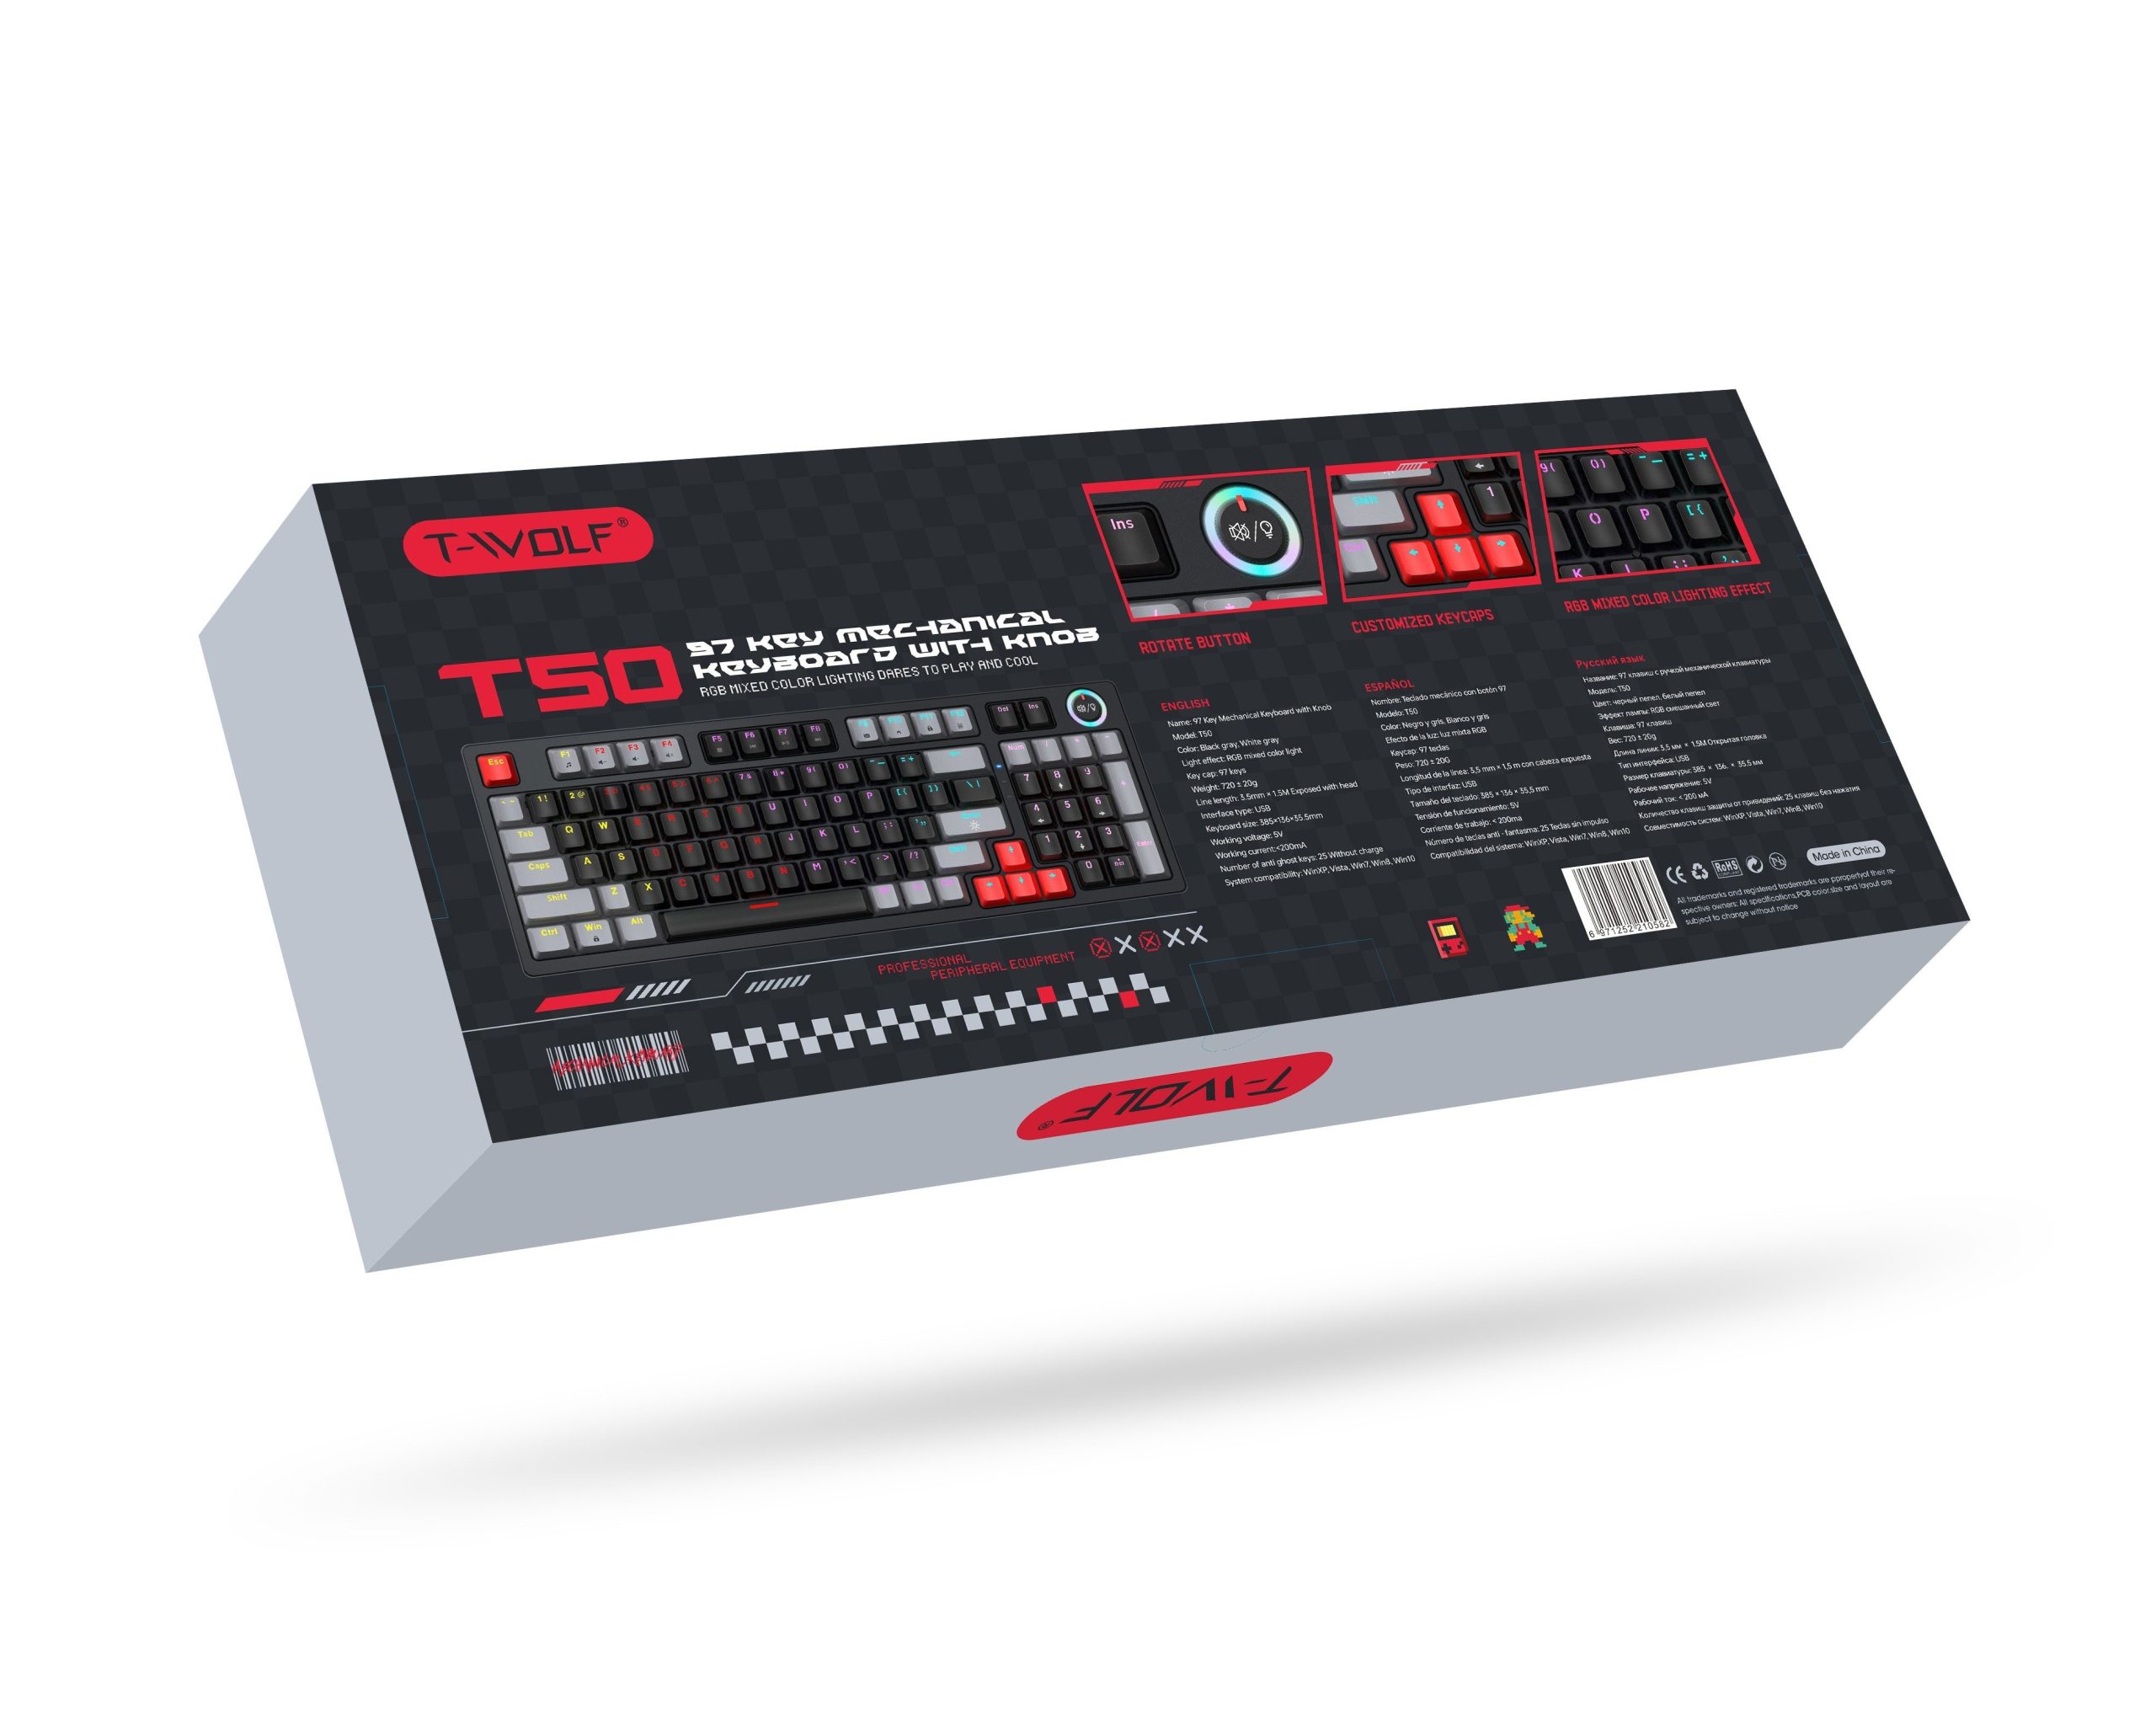 Keyboard T-WOLF T50 Black Chính hãng (Phím cơ, 97 key, Blue Switch, 22 chế độ LED)